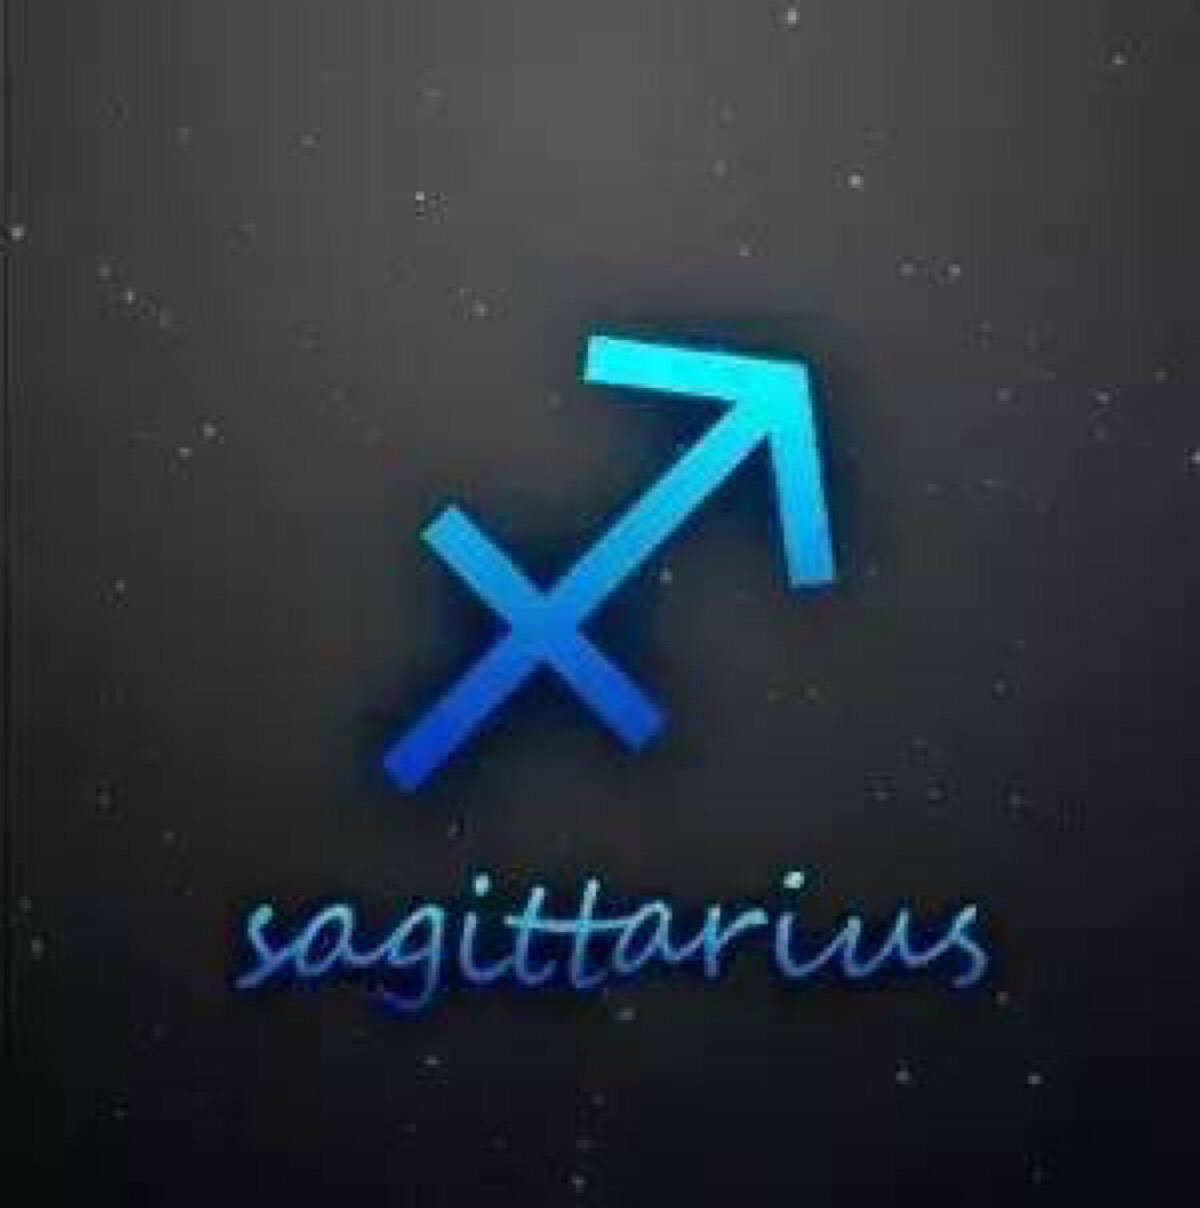 十二星座符号含义 射手座 sagittarius 射手座的星座符号就是个半人半